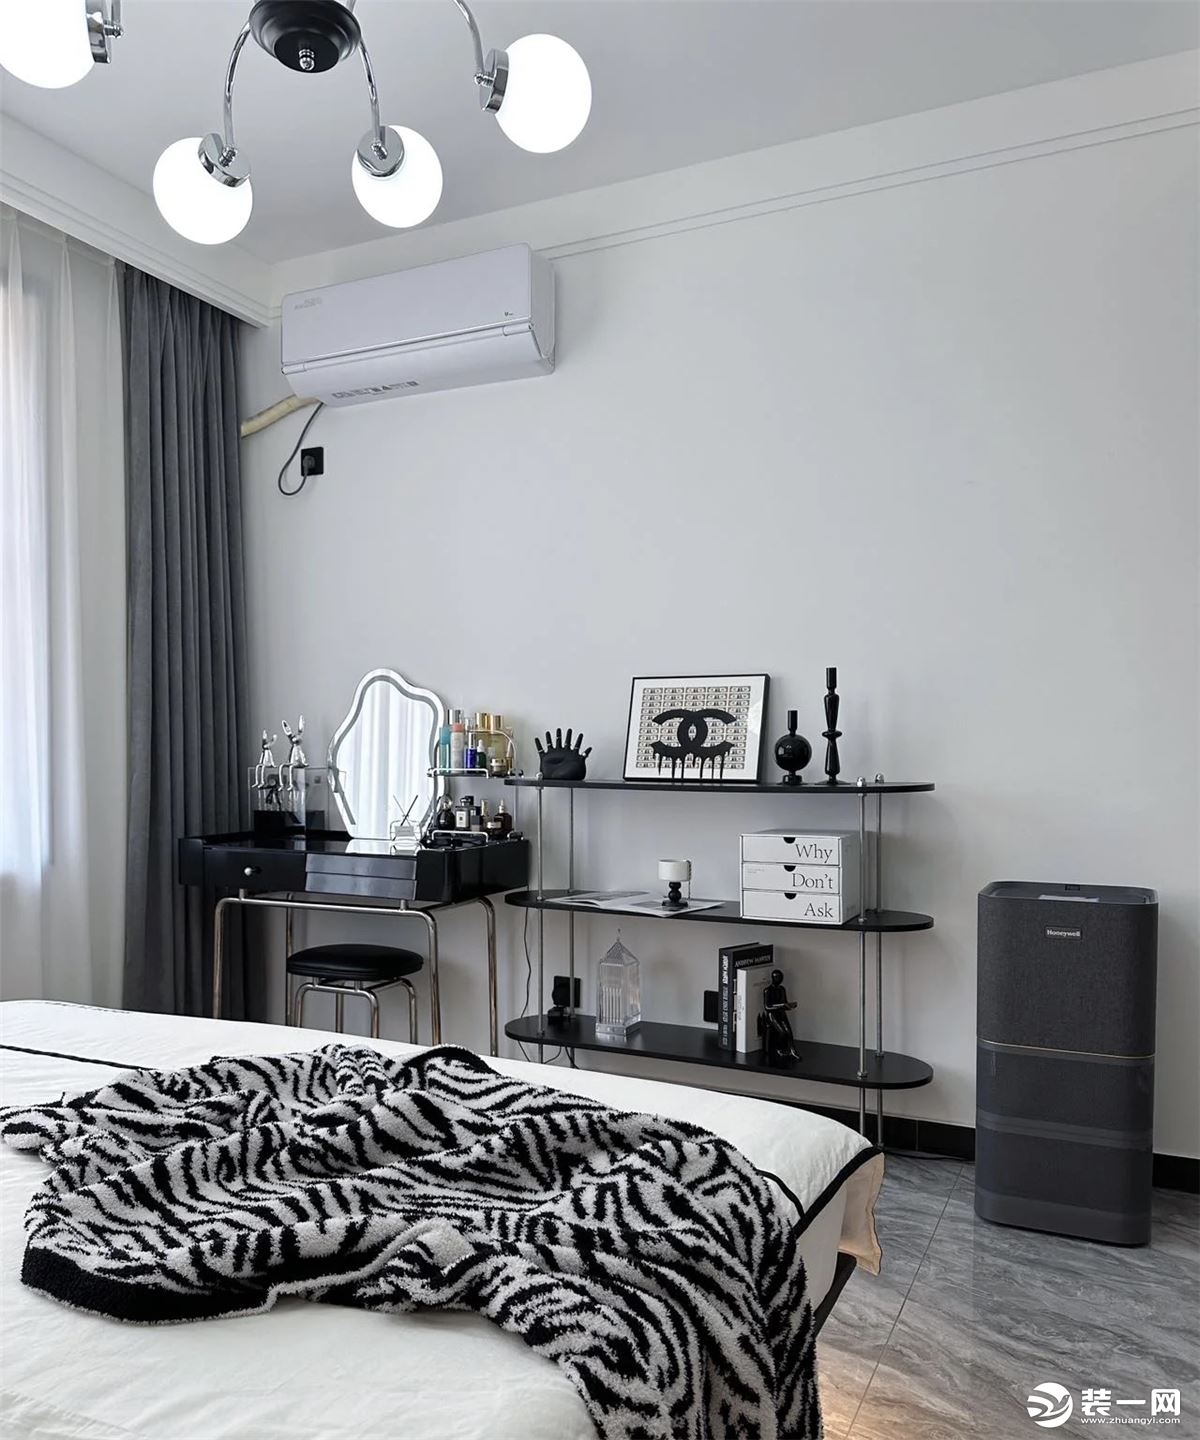 卧室整体布局是讲究且实用的，冷色系将整个空间贯穿，营造出自然舒适的空间氛围。